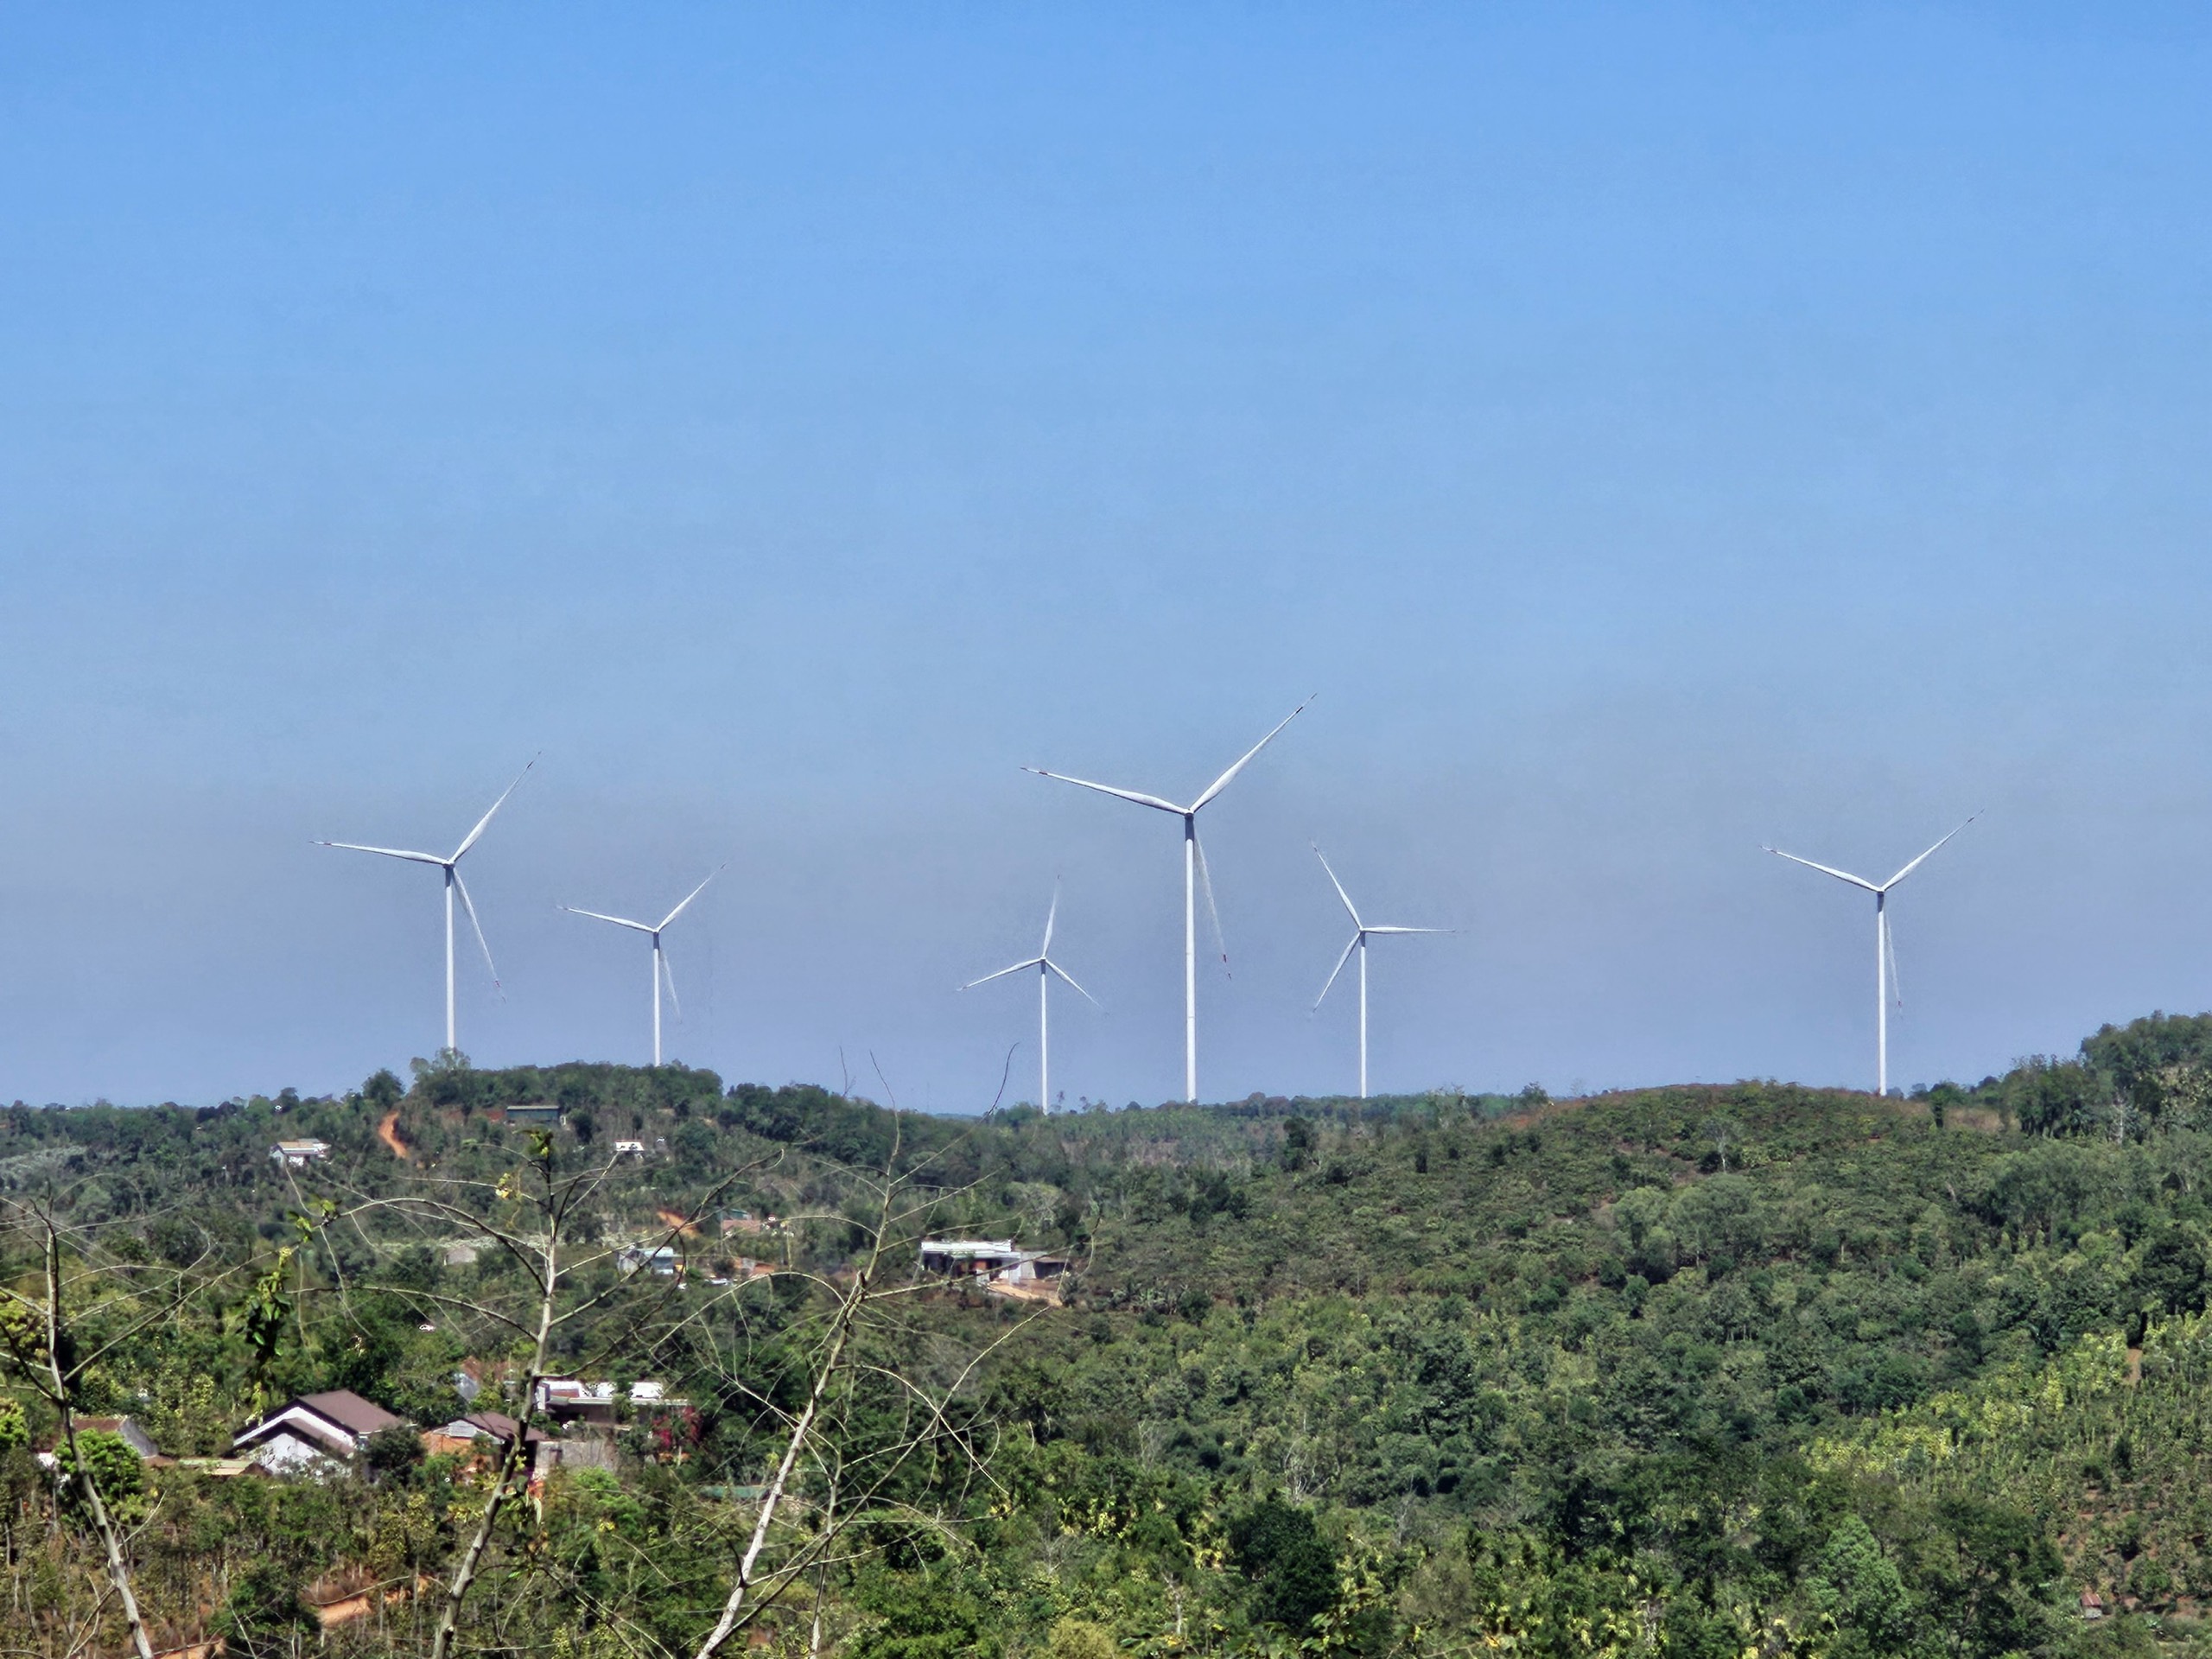 Uỷ ban kiểm tra Trung ương yêu cầu Đắk Nông cung cấp hồ sơ các dự án điện gió - Ảnh 1.